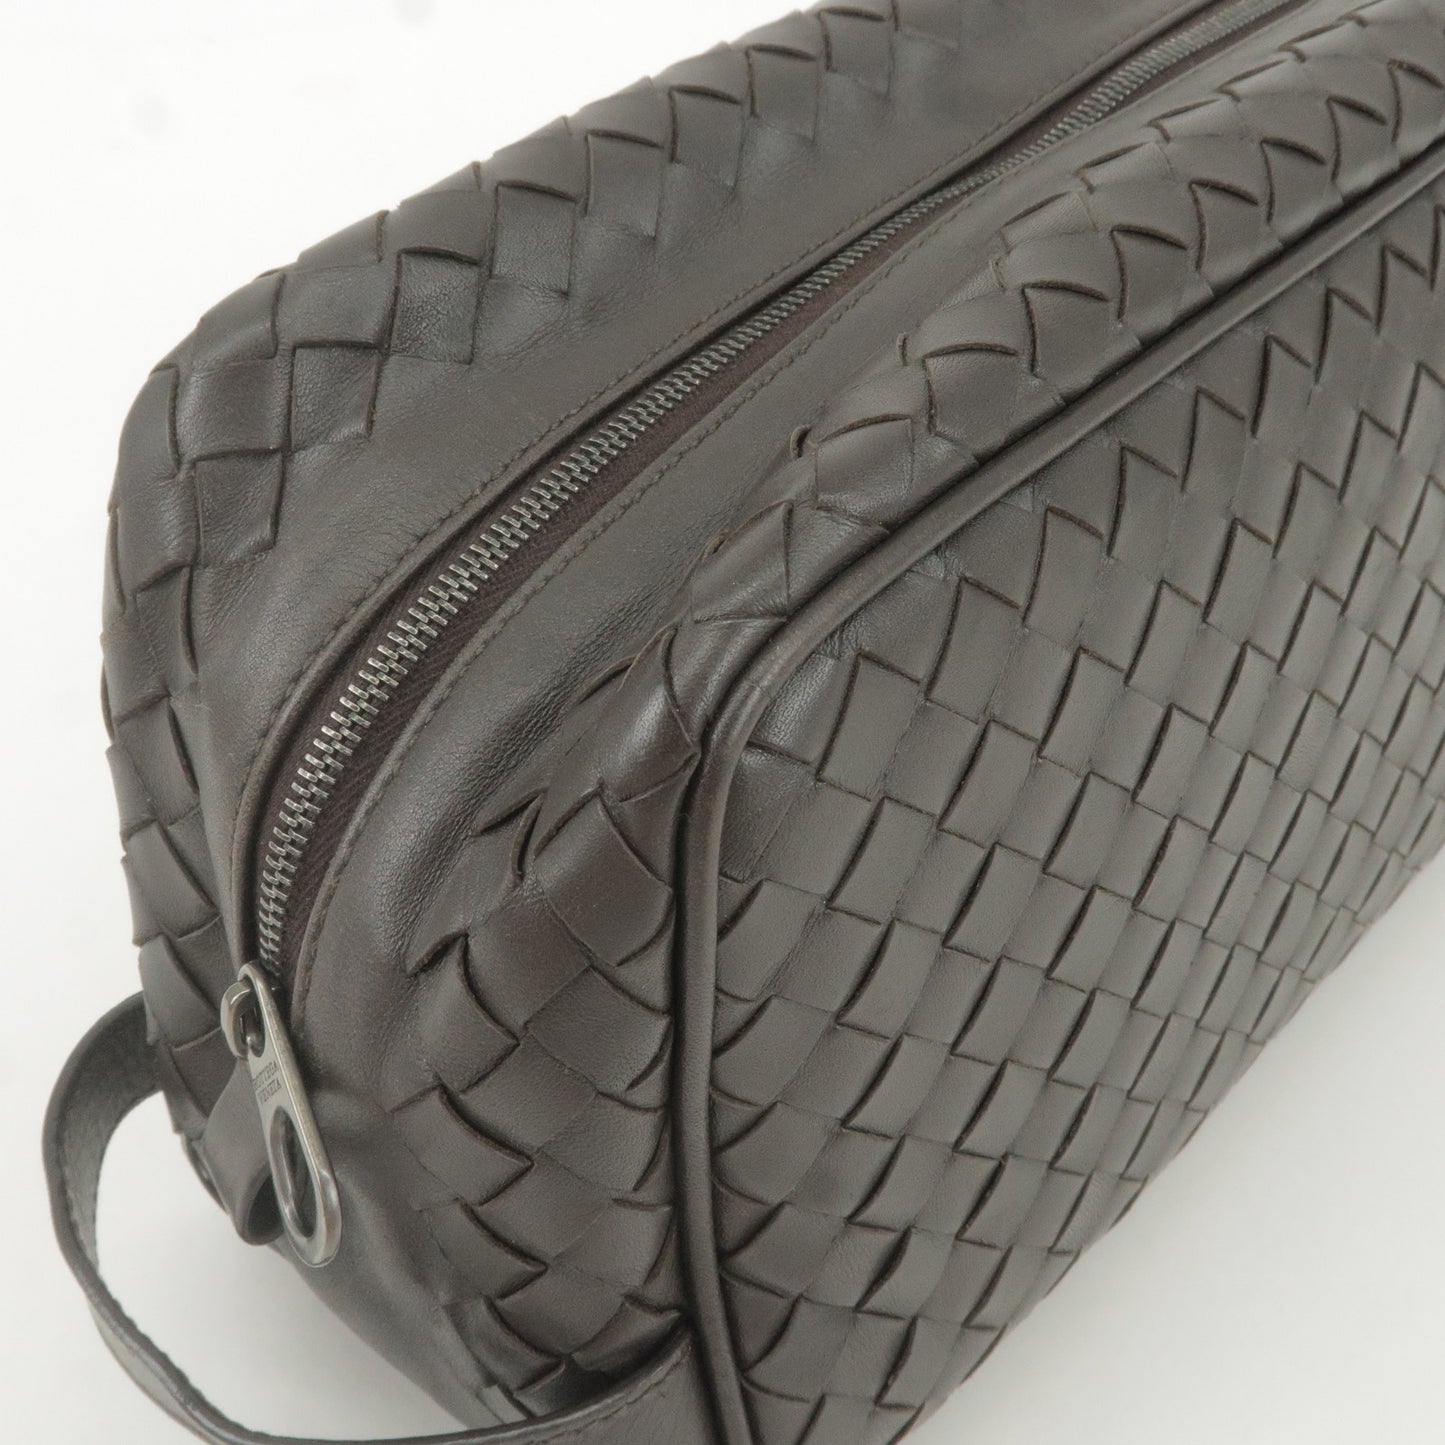 BOTTEGA VENETA Intrecciato Leather Second Bag Pouch 244706